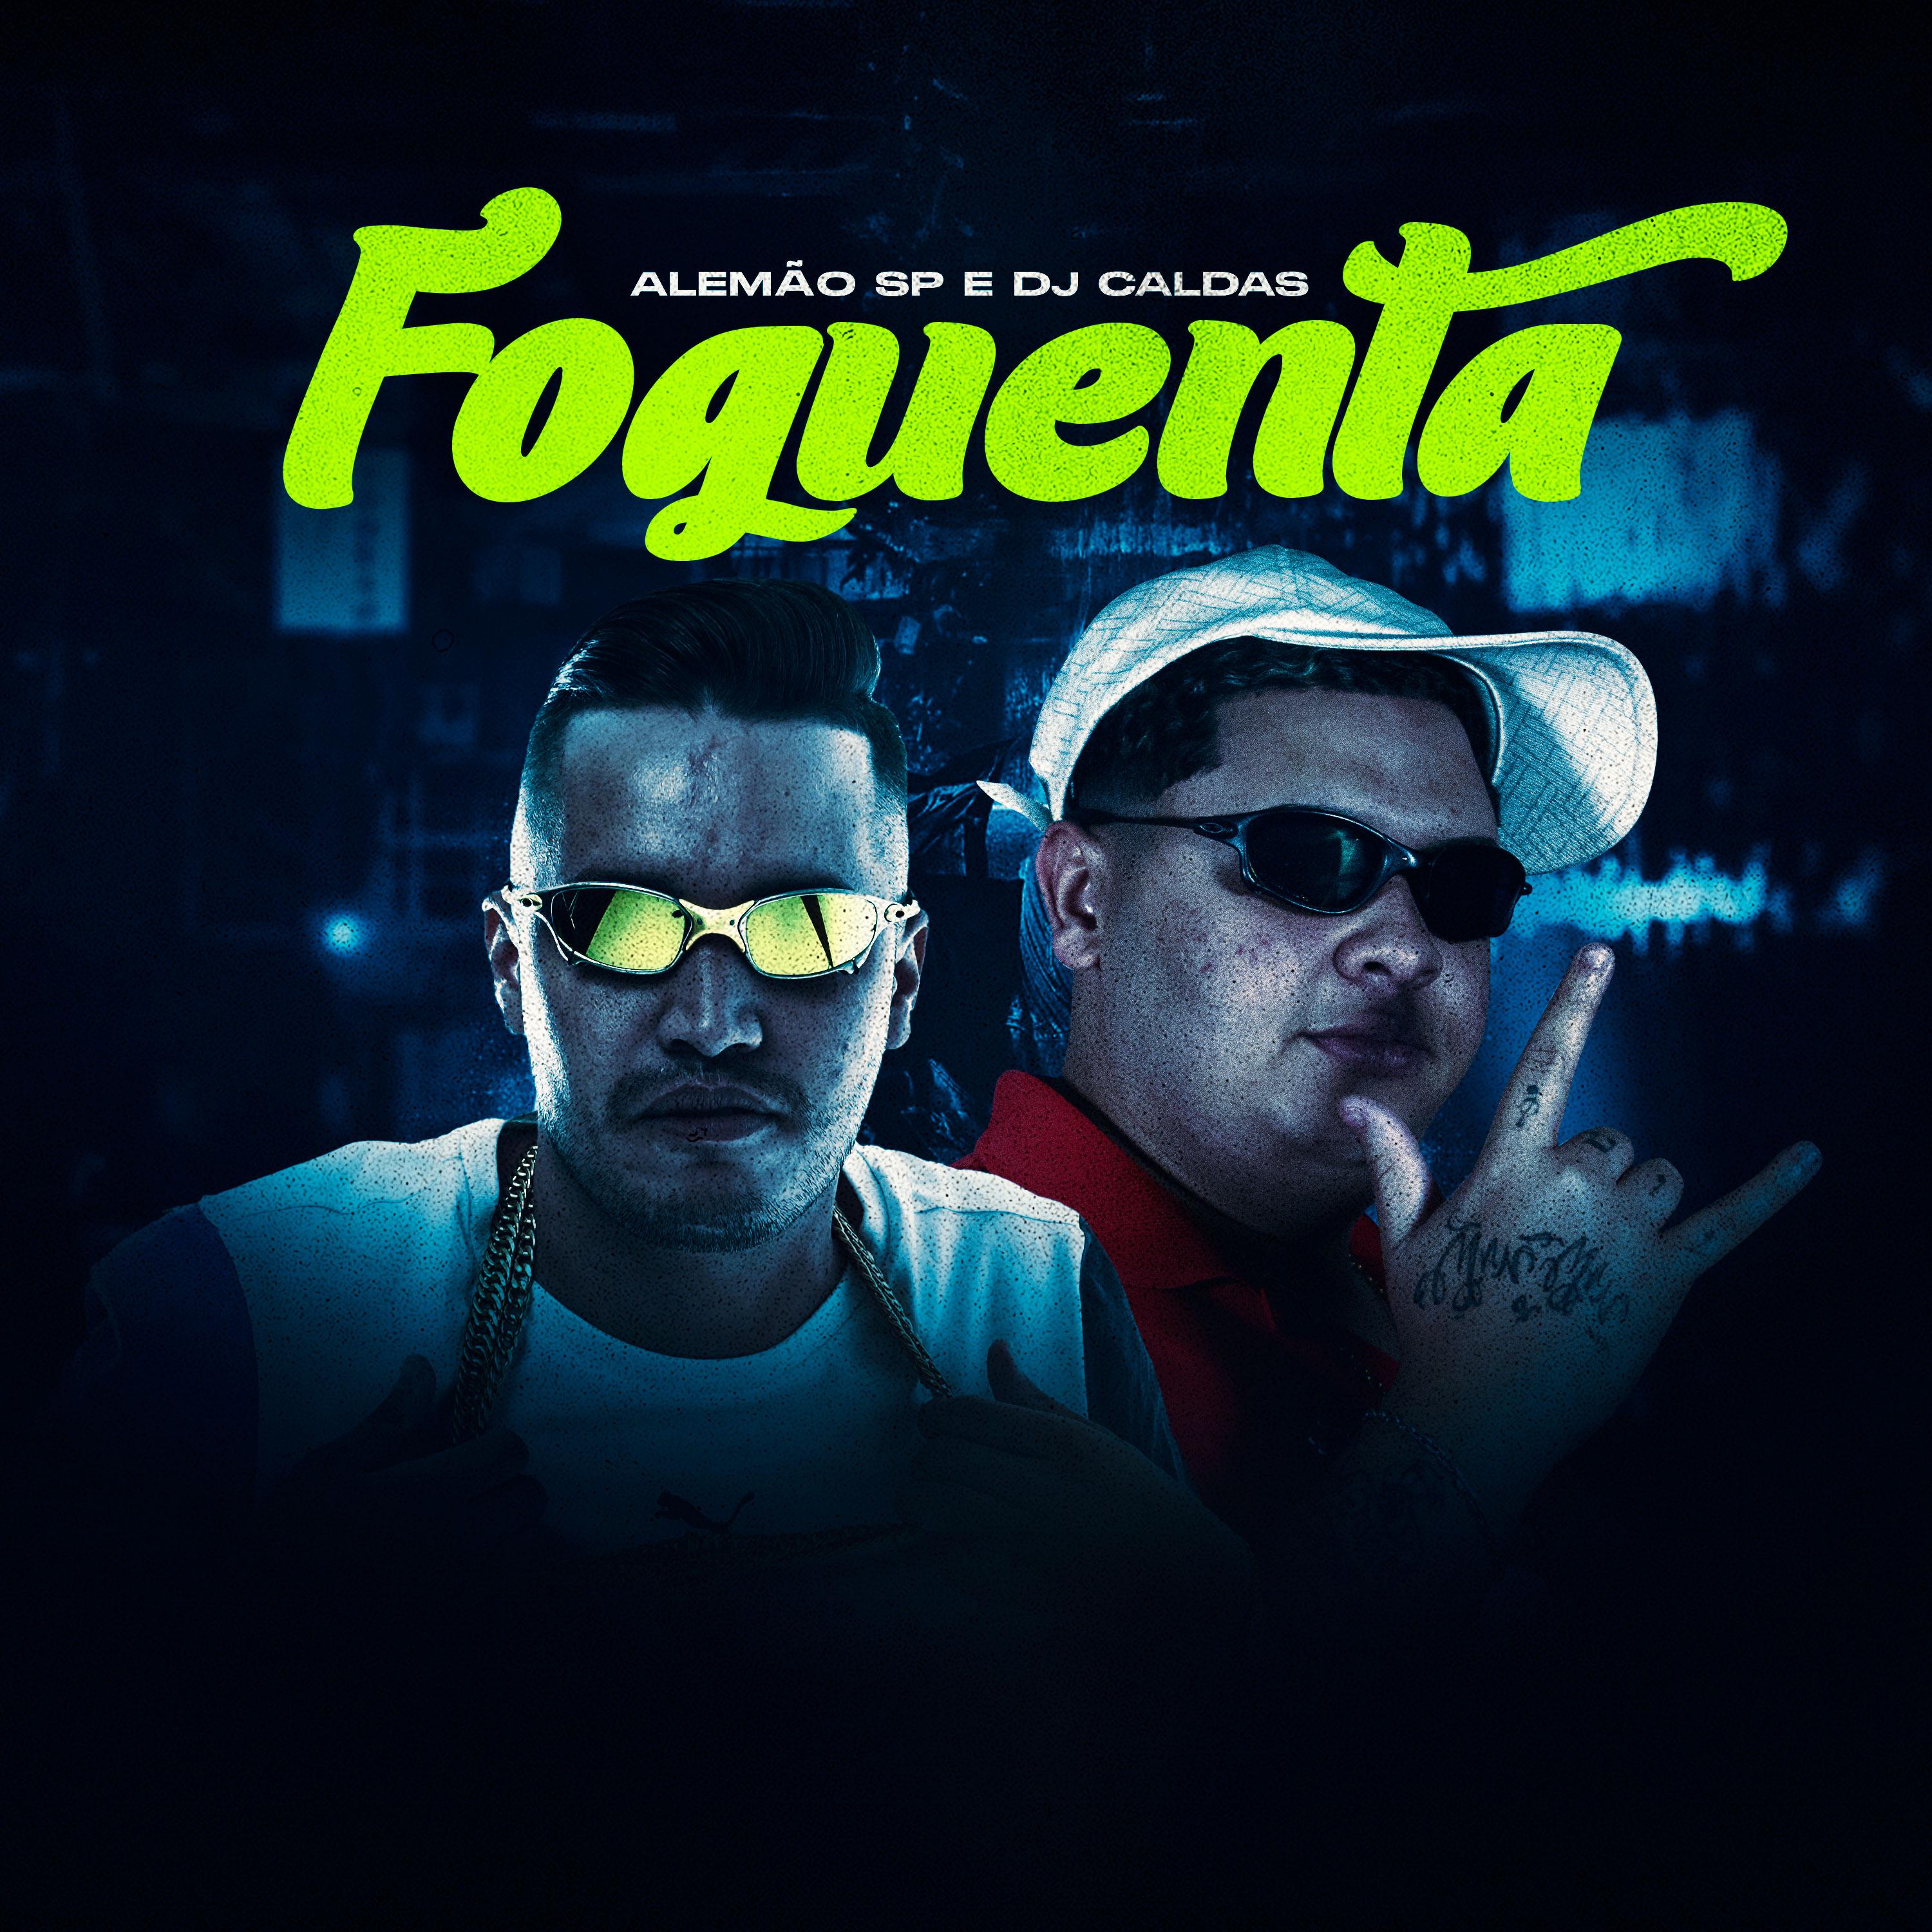 Постер альбома Foguenta